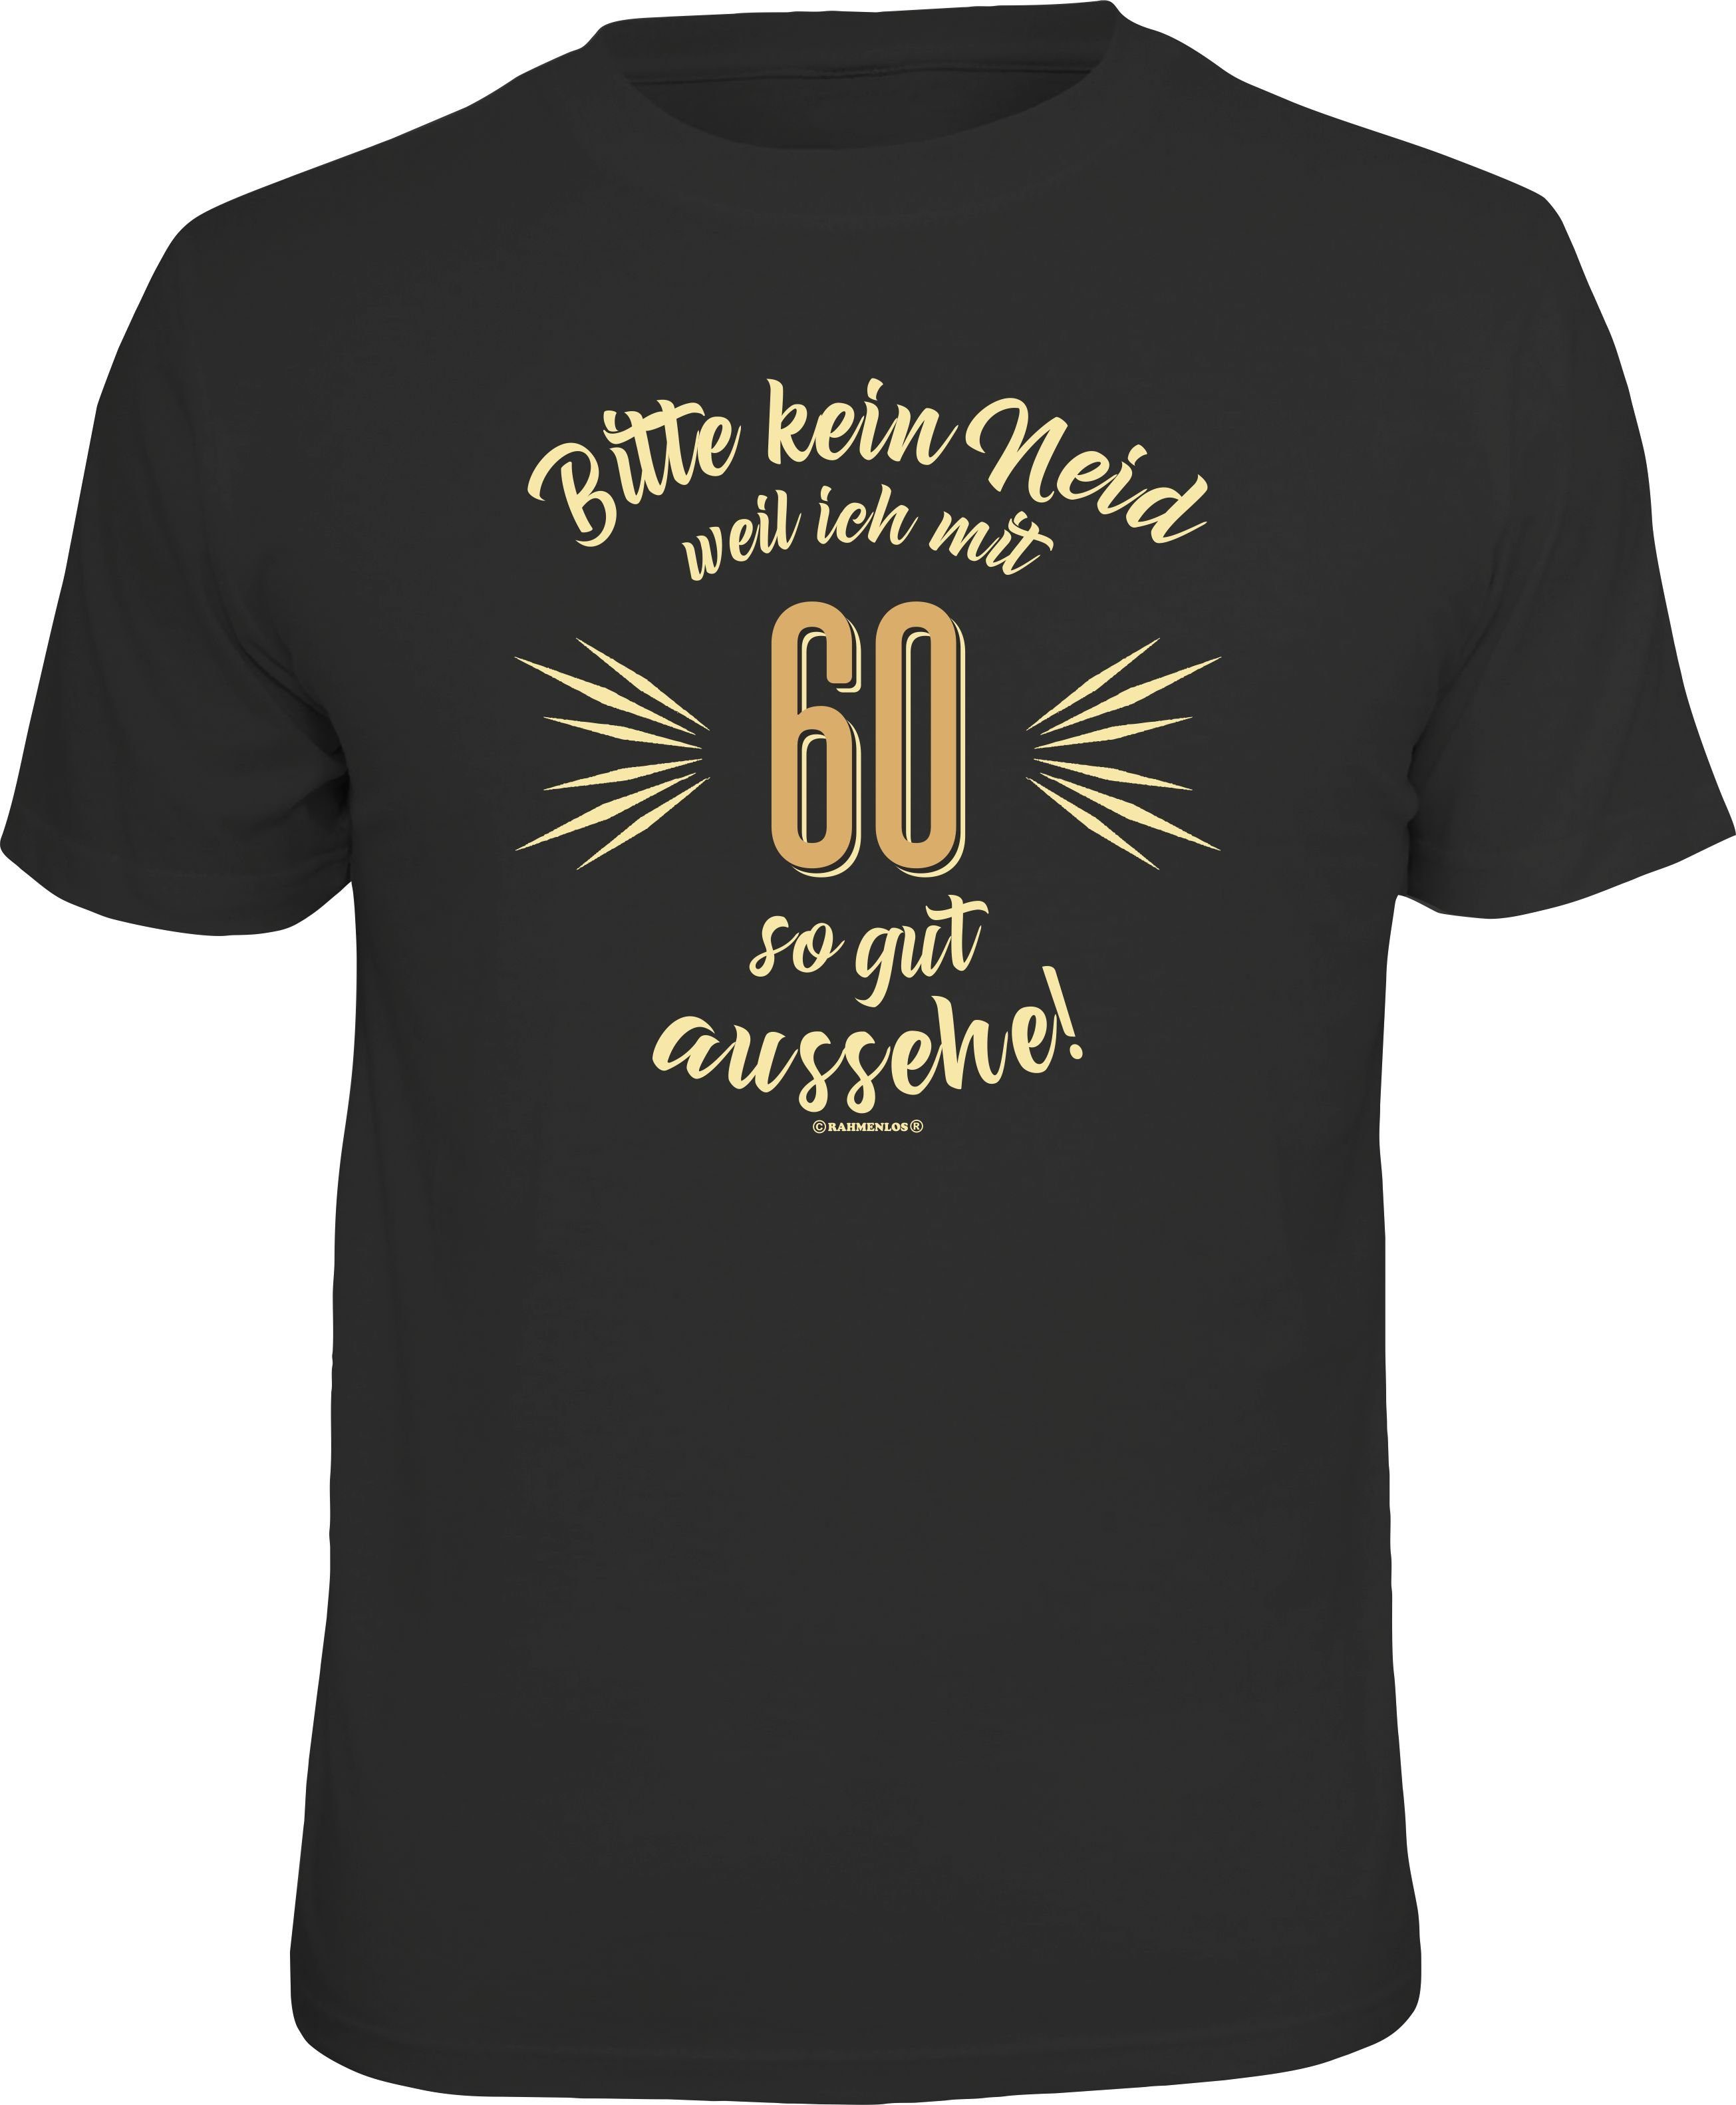 Rahmenlos T-Shirt als Geschenk zum 60. Geburtstag - Bitte kein Neid